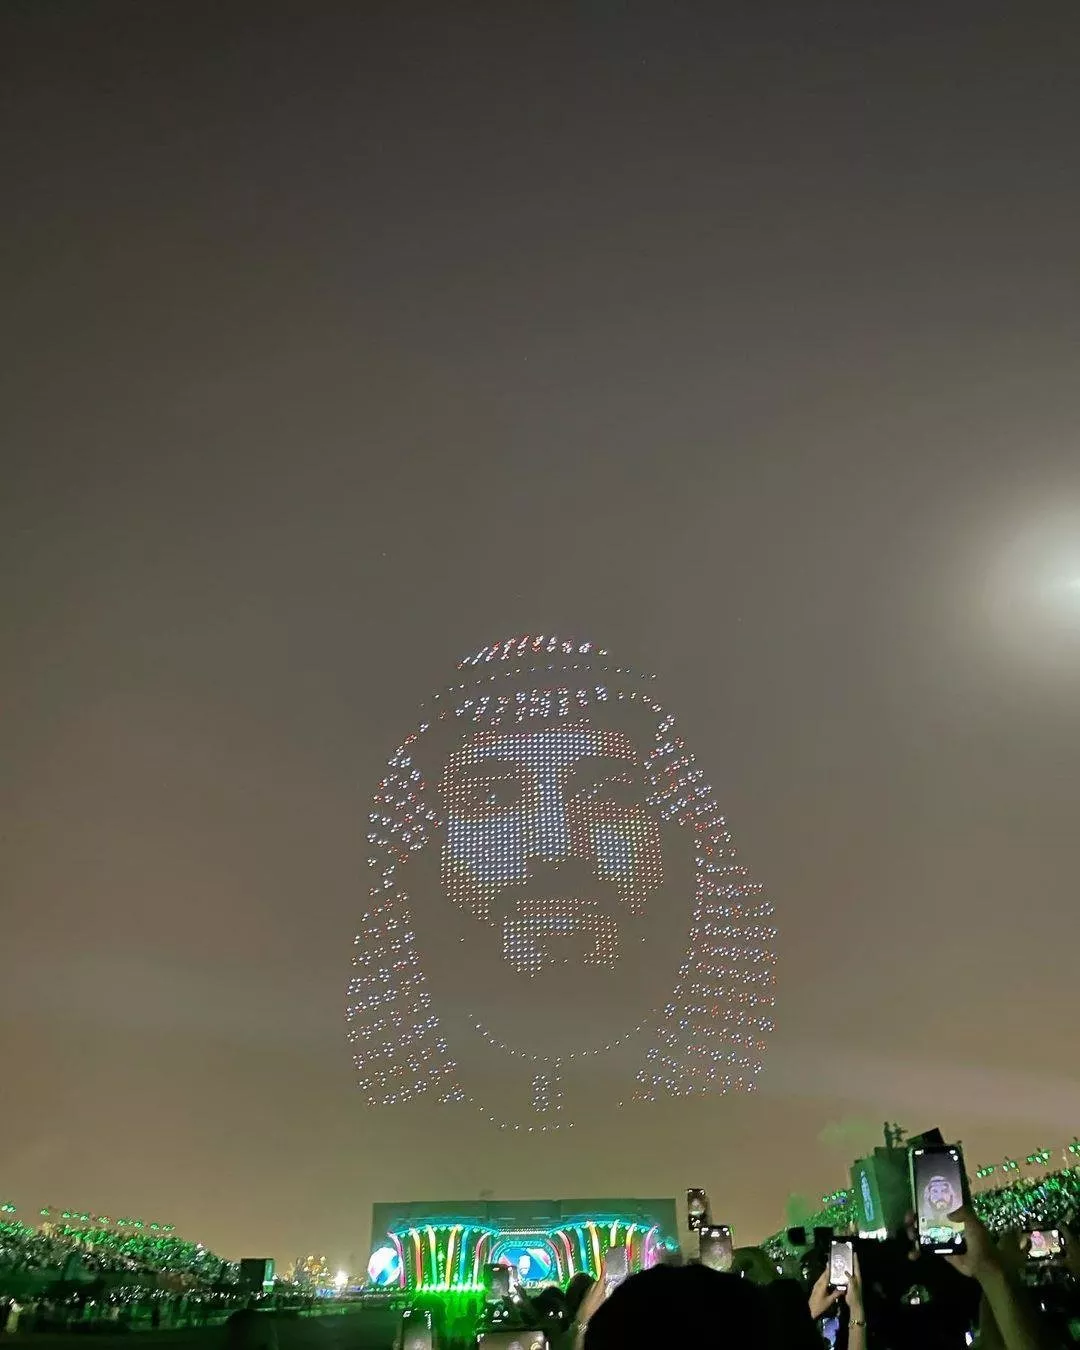 أكبر حدث ترفيهي في السعودية... موسم الرياض 2021 يبدأ فعالياته بافتتاح مبهر